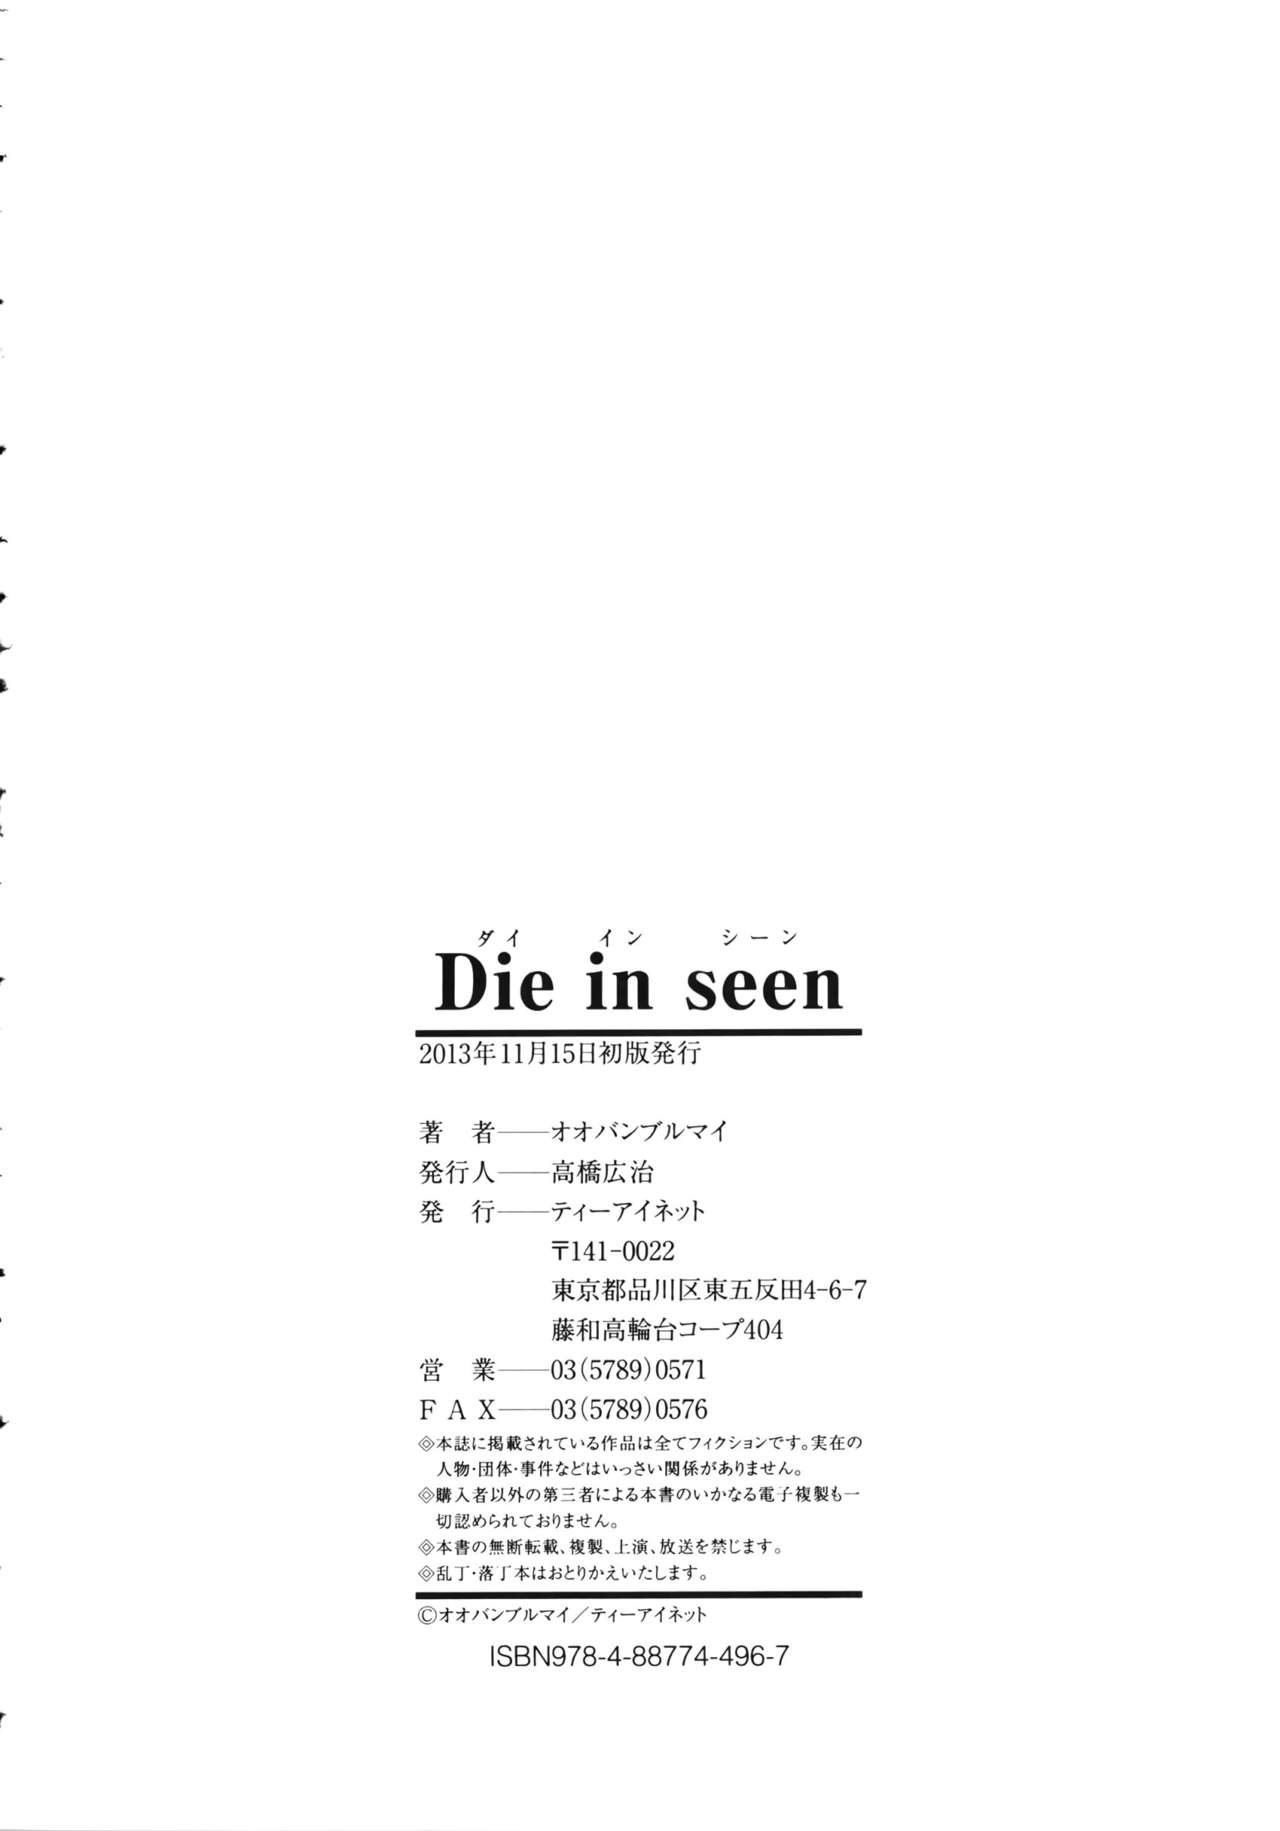 [Oobanburumai] Die in seen [オオバンブルマイ] Die in seen + ラフイラスト集・ページ, 複製原画